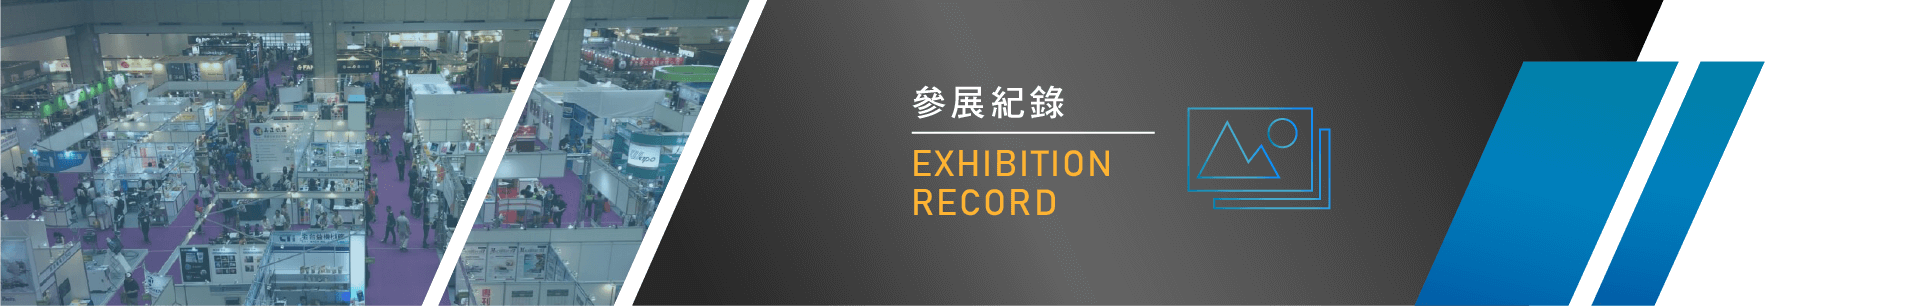 2019 包裝世界上海博覽會